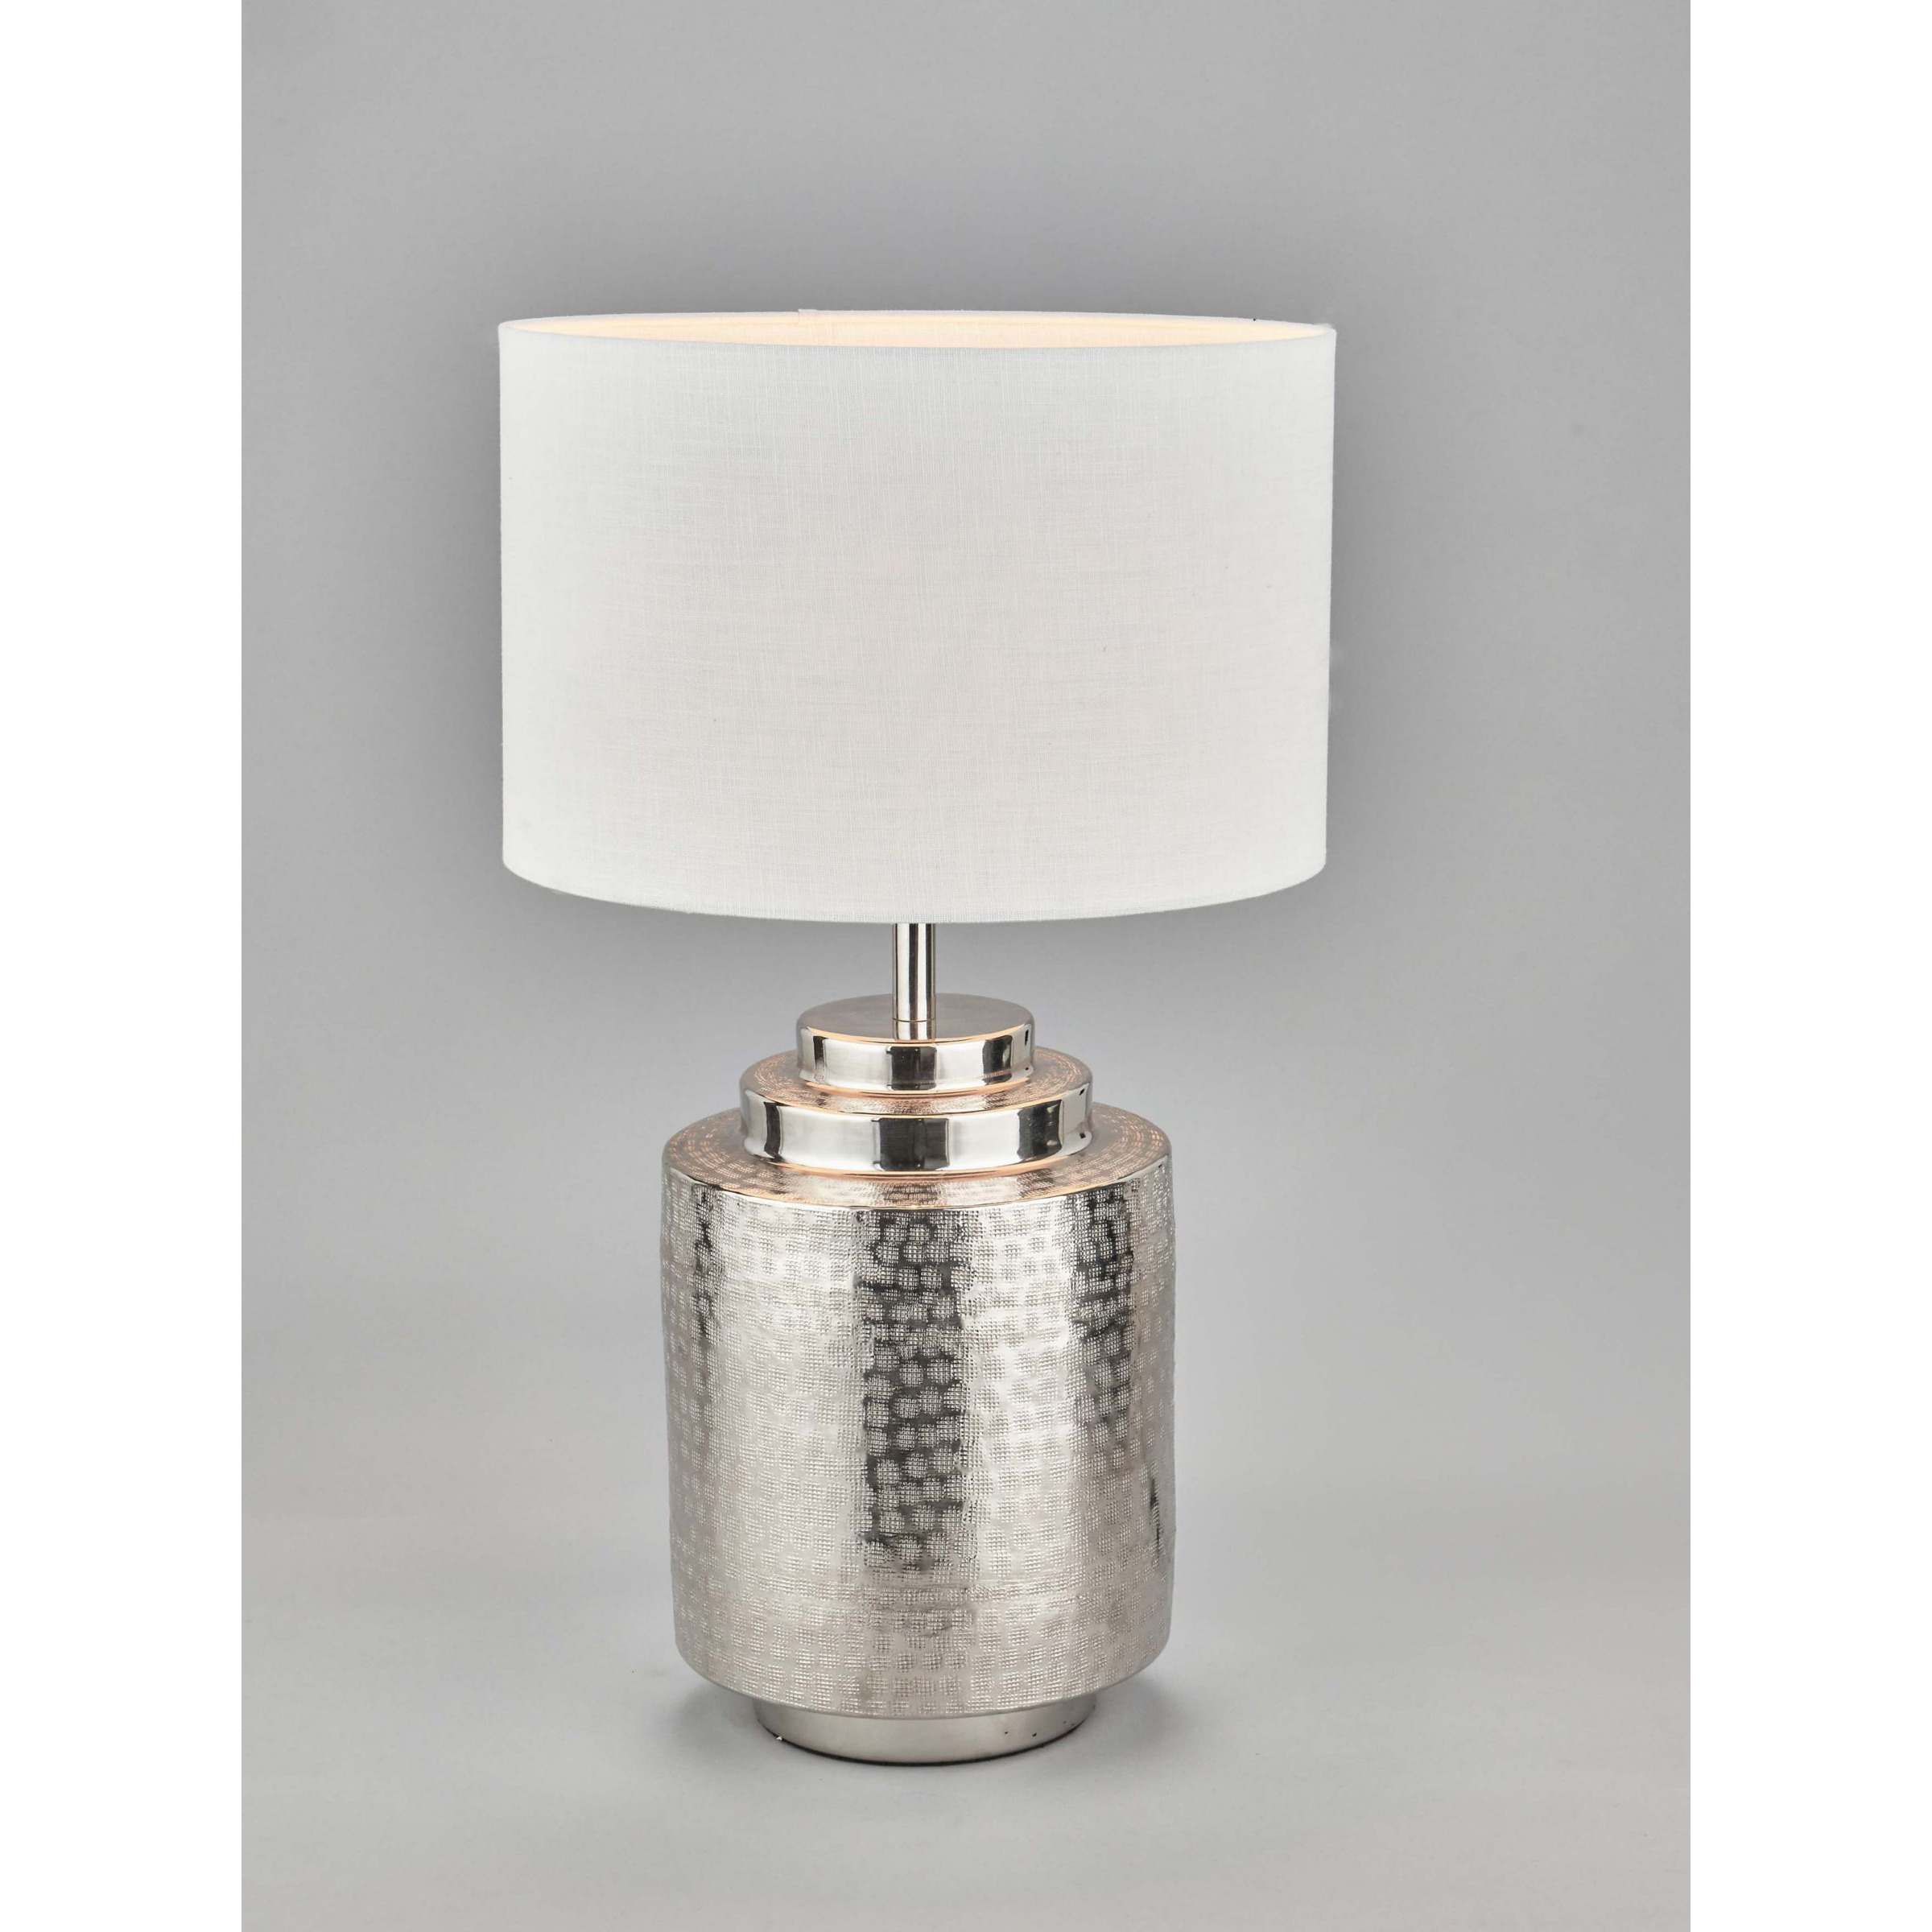 Pacific Zuri Silver Table Lamp, Metallic Silver - image 1